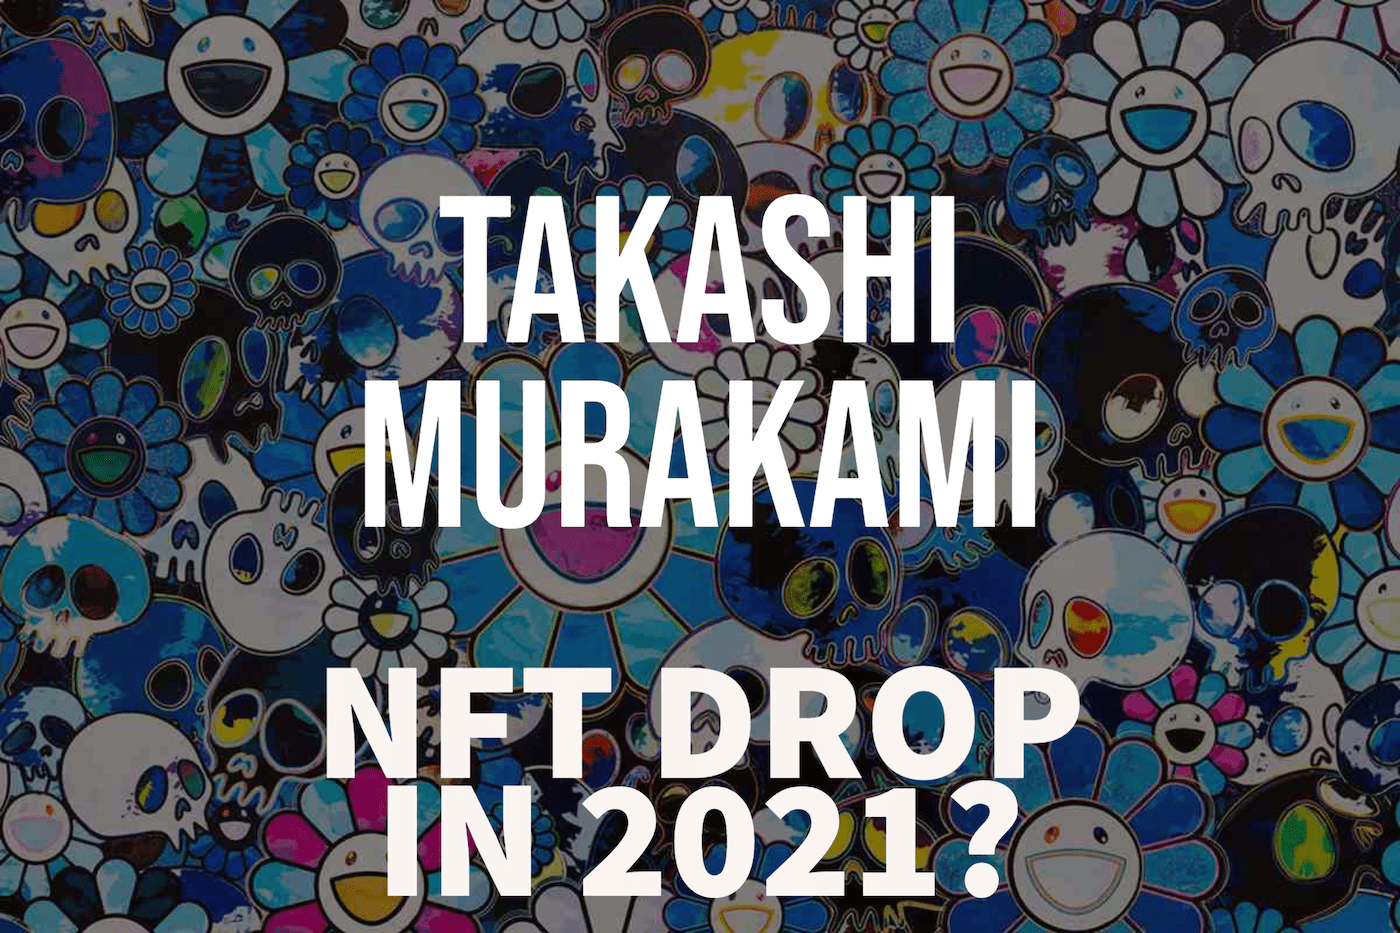 Takashi Murakami - NFT Drop 2021